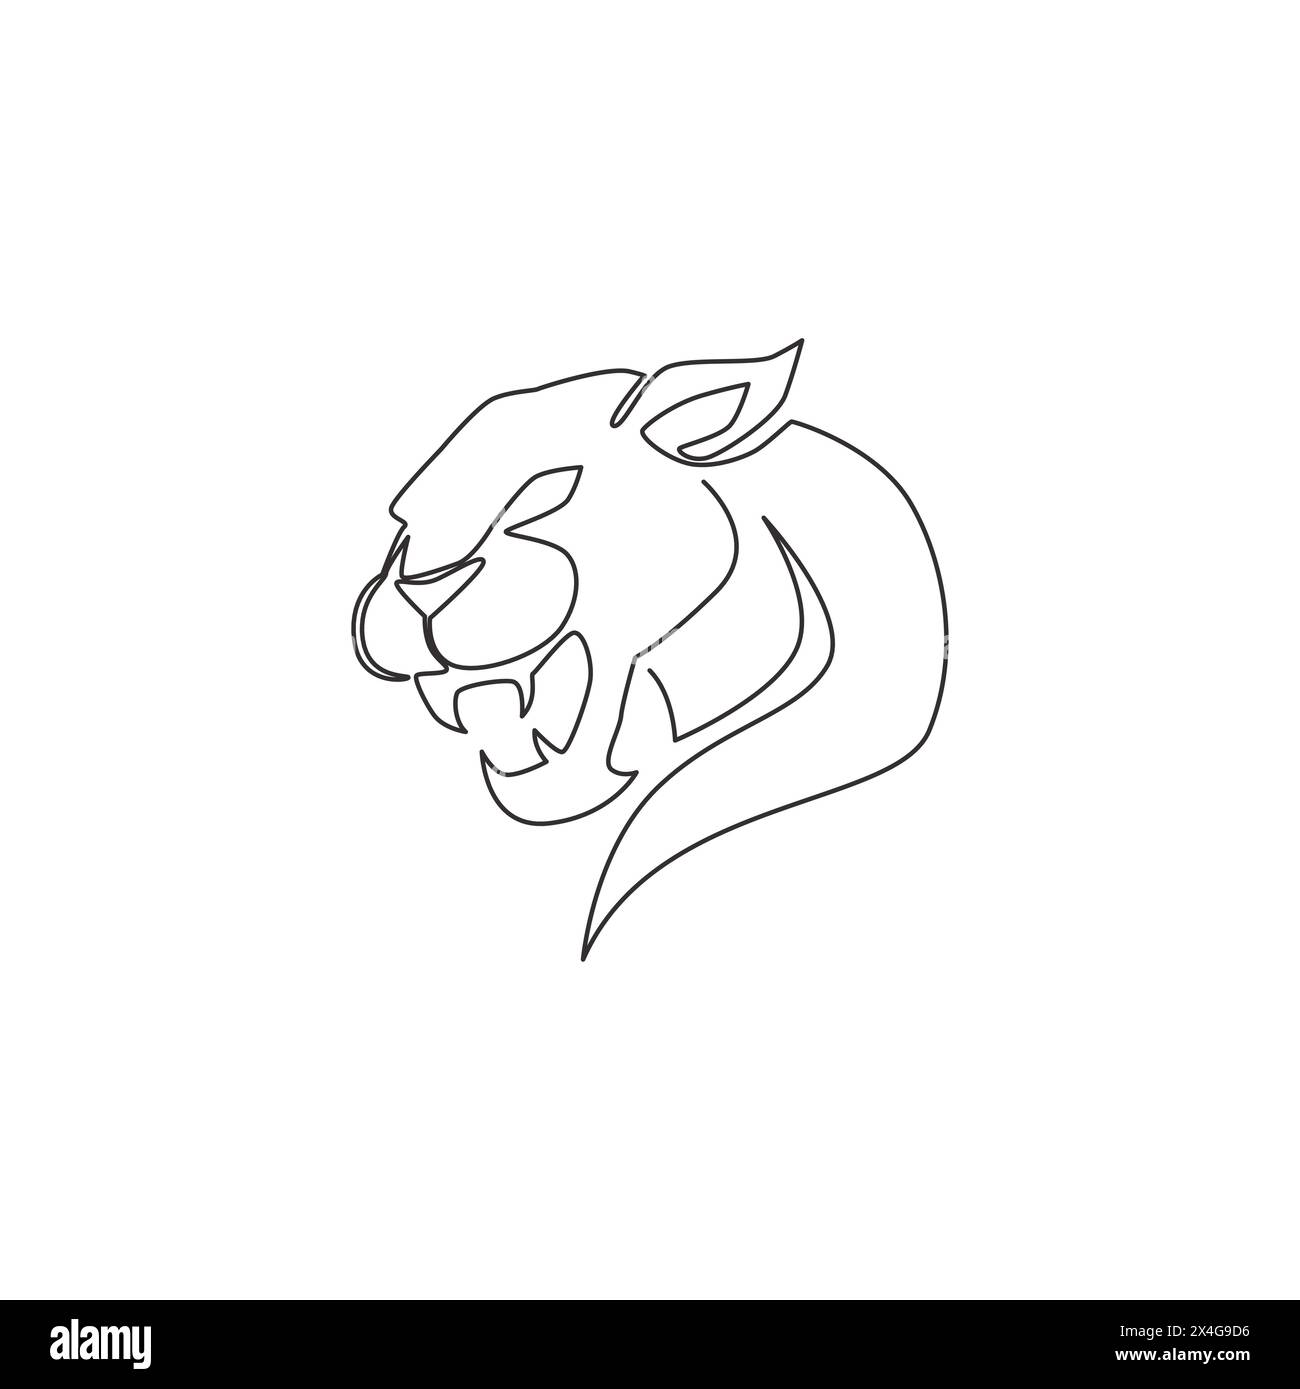 Dessin en ligne continue unique de léopard élégant pour l'identité du logo de l'équipe de chasseur. Concept de mascotte animal mammifère jaguar dangereux pour club de sport. Tendance Illustration de Vecteur